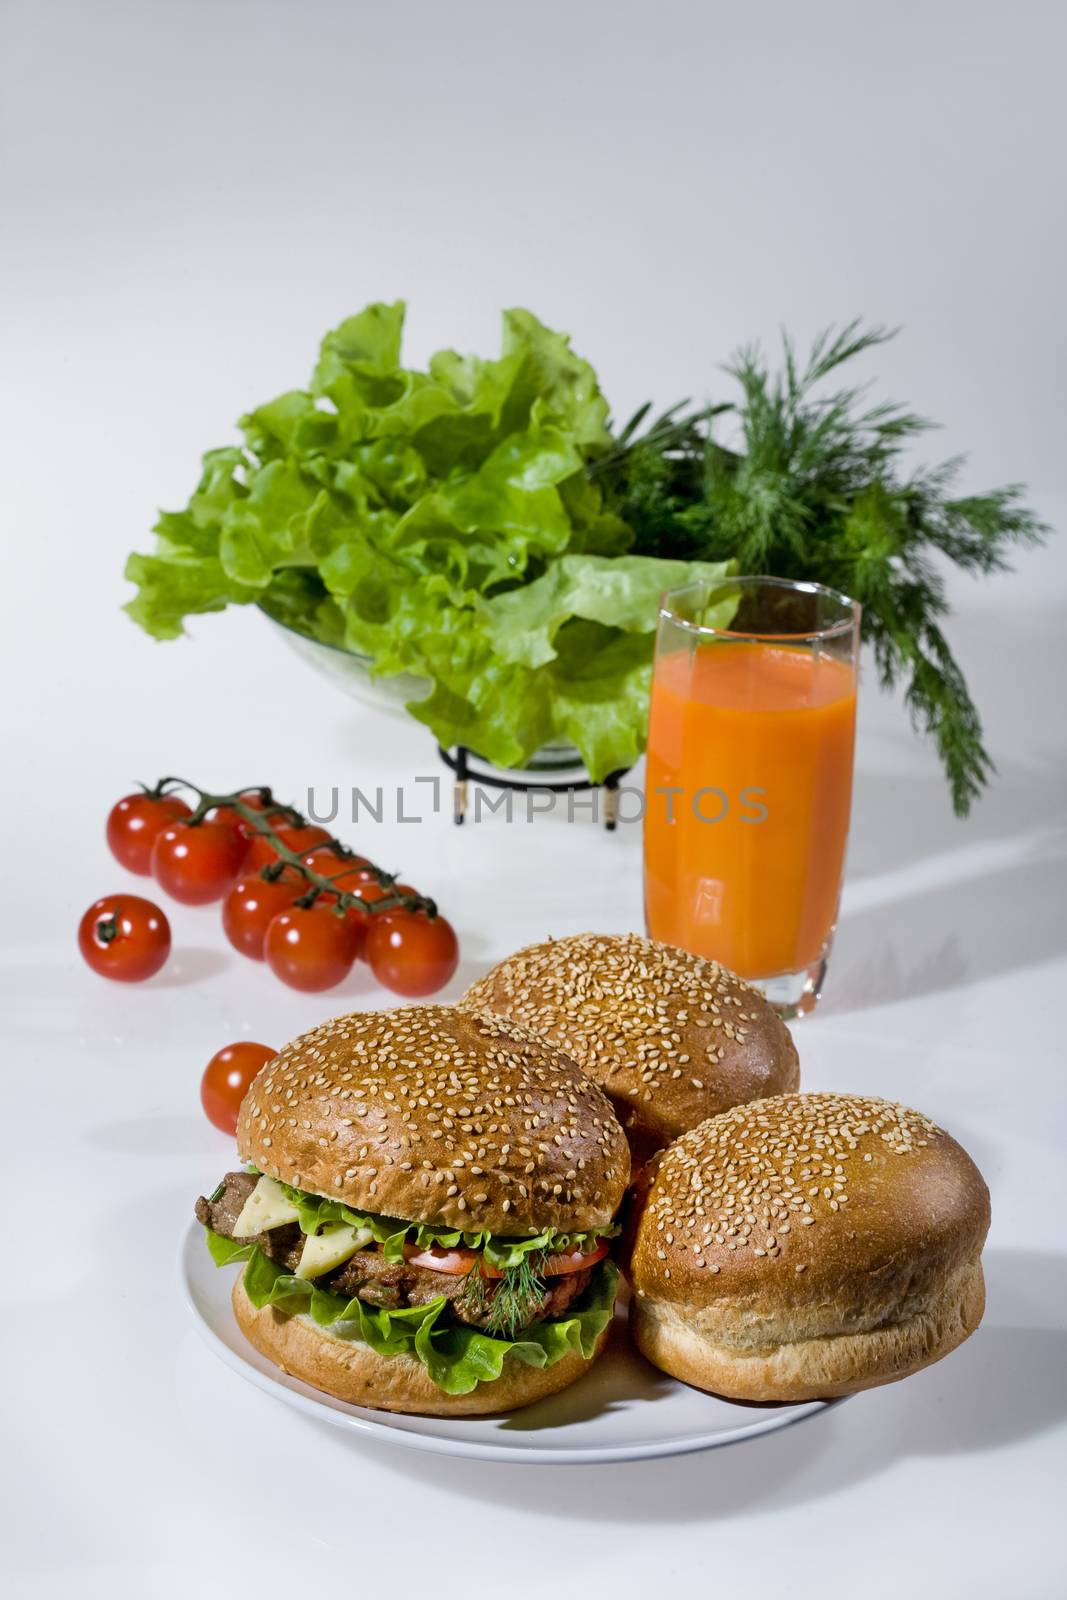 Hamburgers, greenery, tomatoes and juice